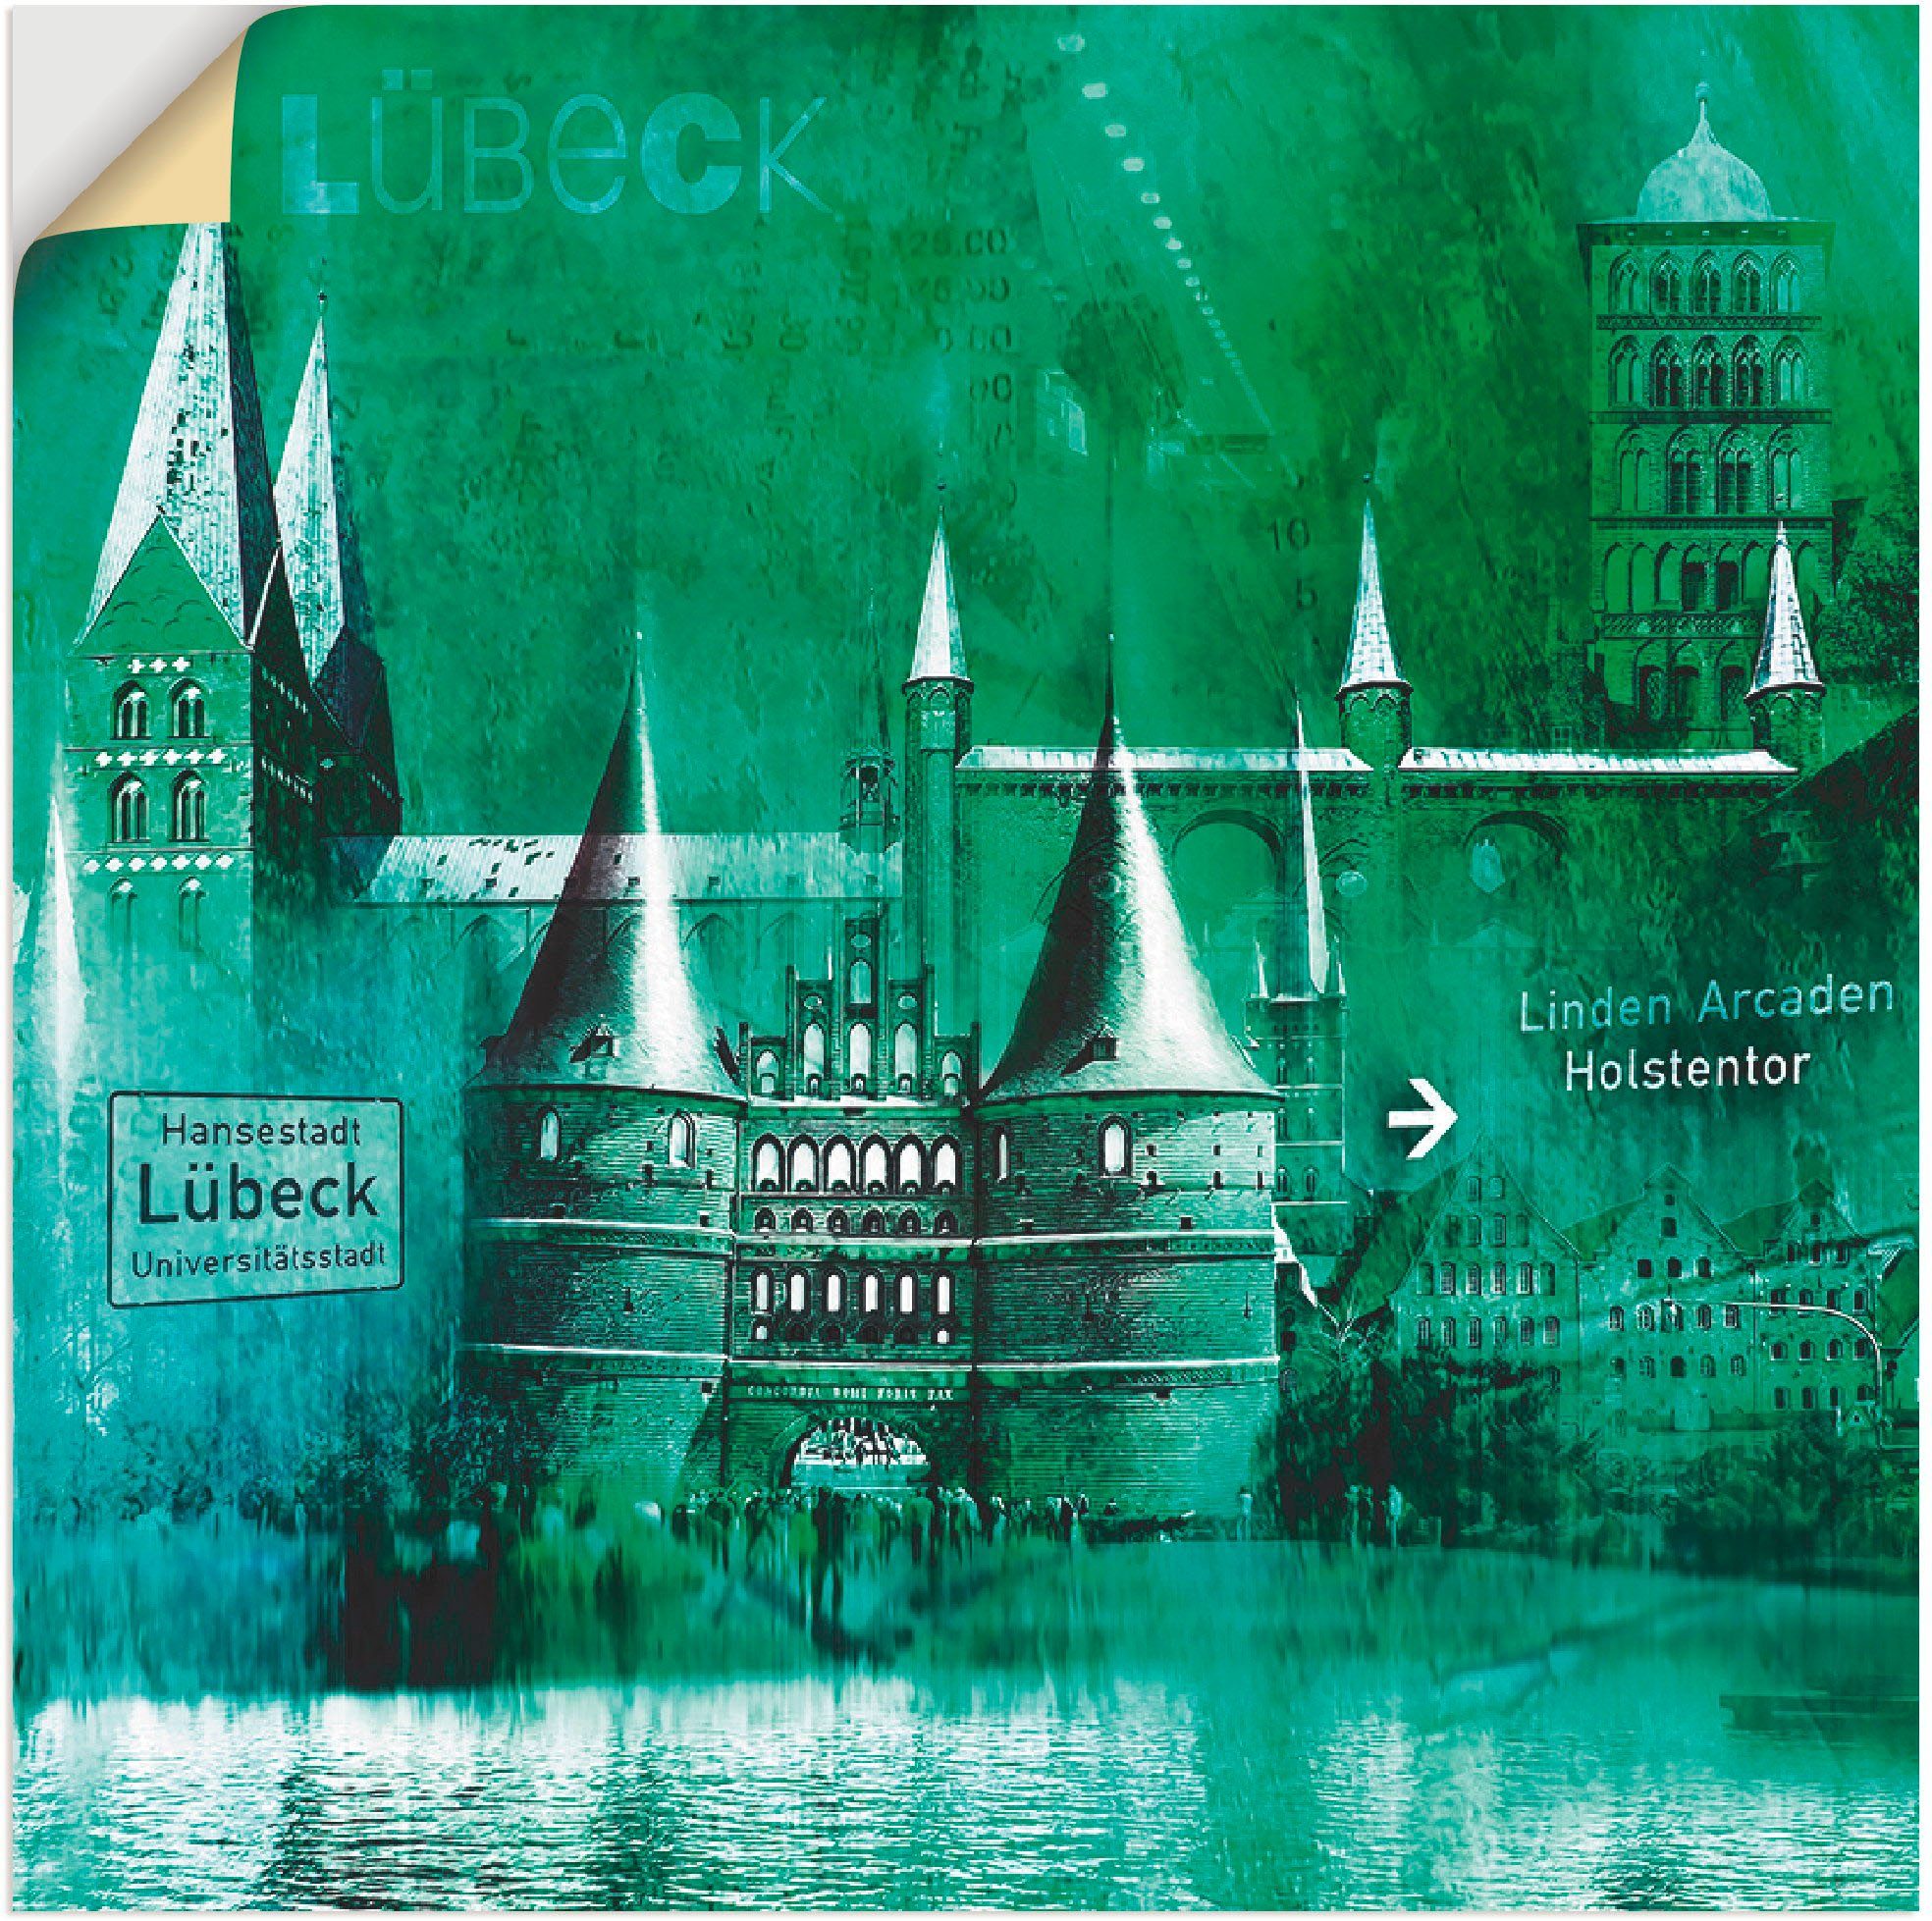 Artland Artprint Lübeck Hanzestad collage 05 in vele afmetingen & productsoorten -artprint op linnen, poster, muursticker / wandfolie ook geschikt voor de badkamer (1 stuk)